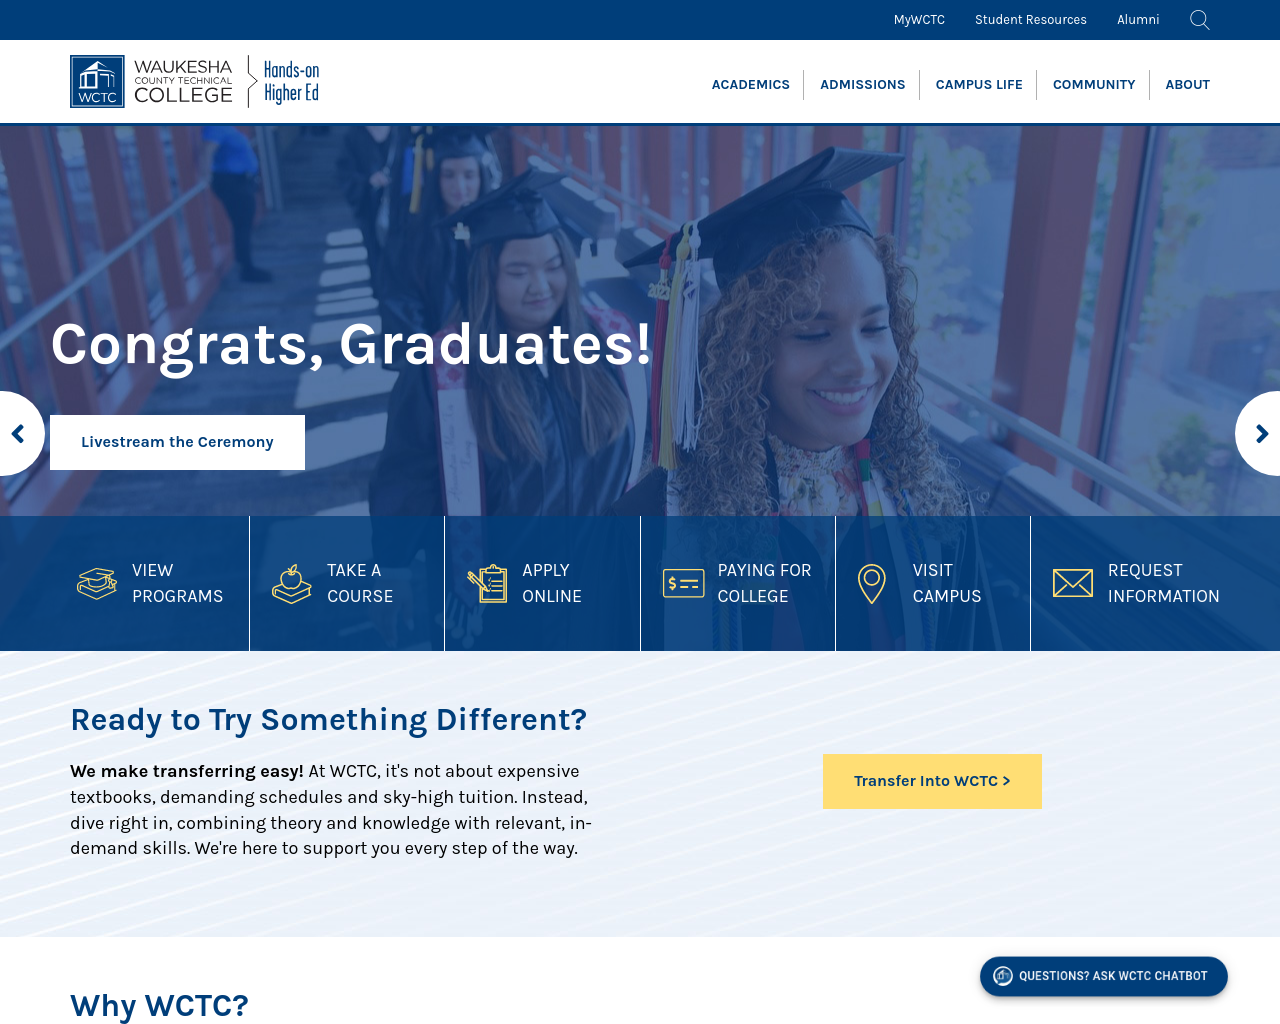 wctc.edu